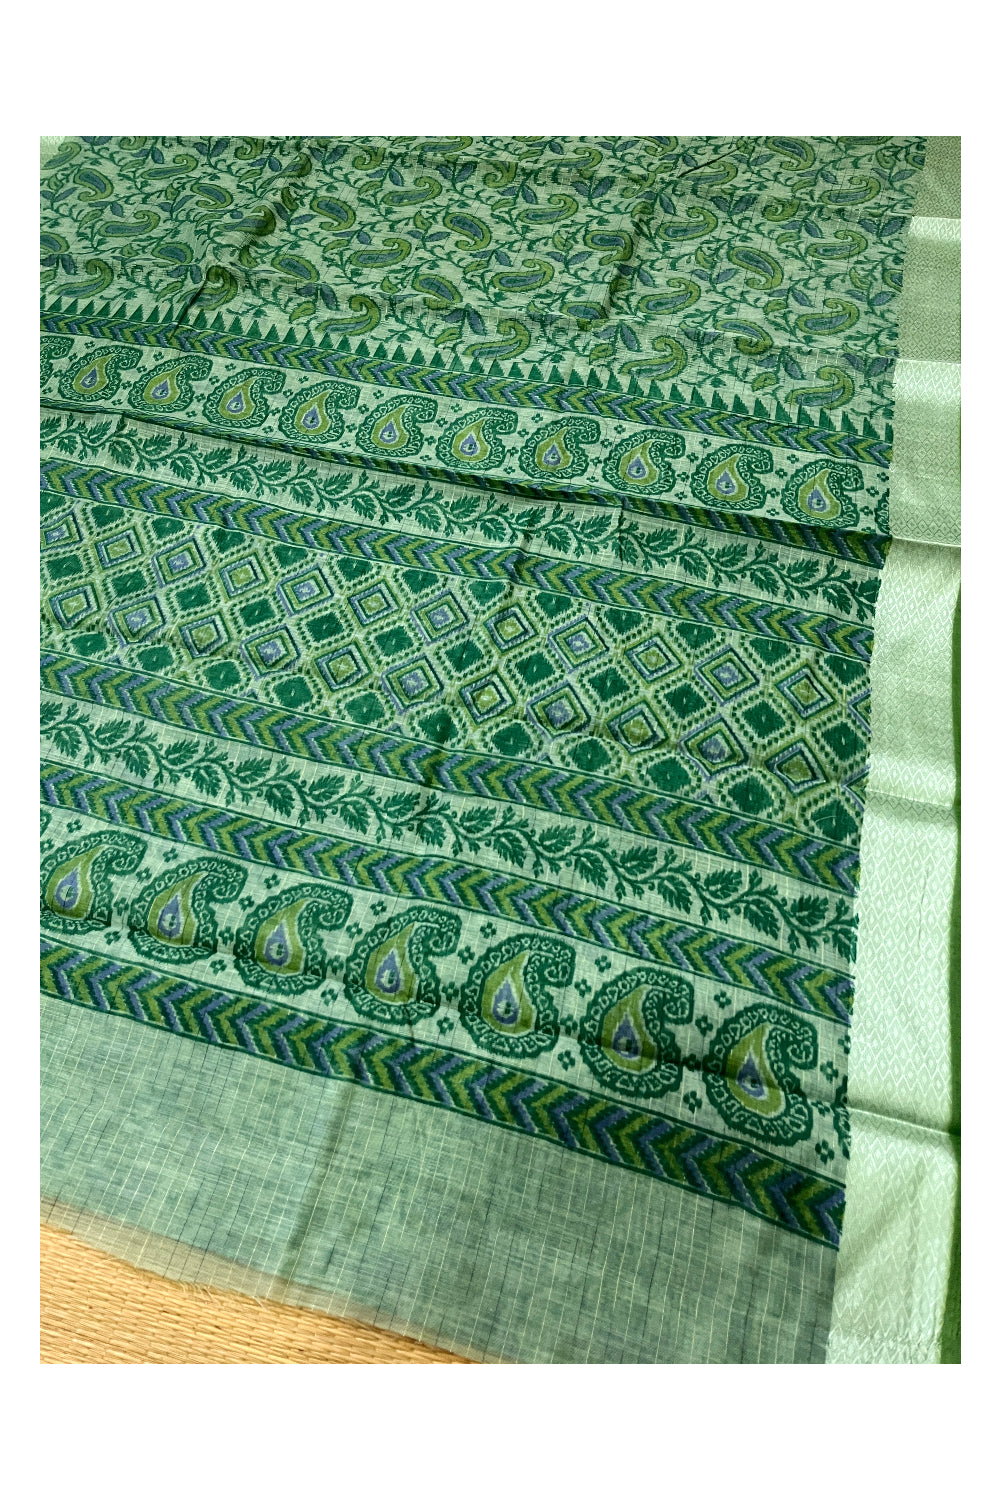 Southloom Cotton Green Paisley Printed Saree